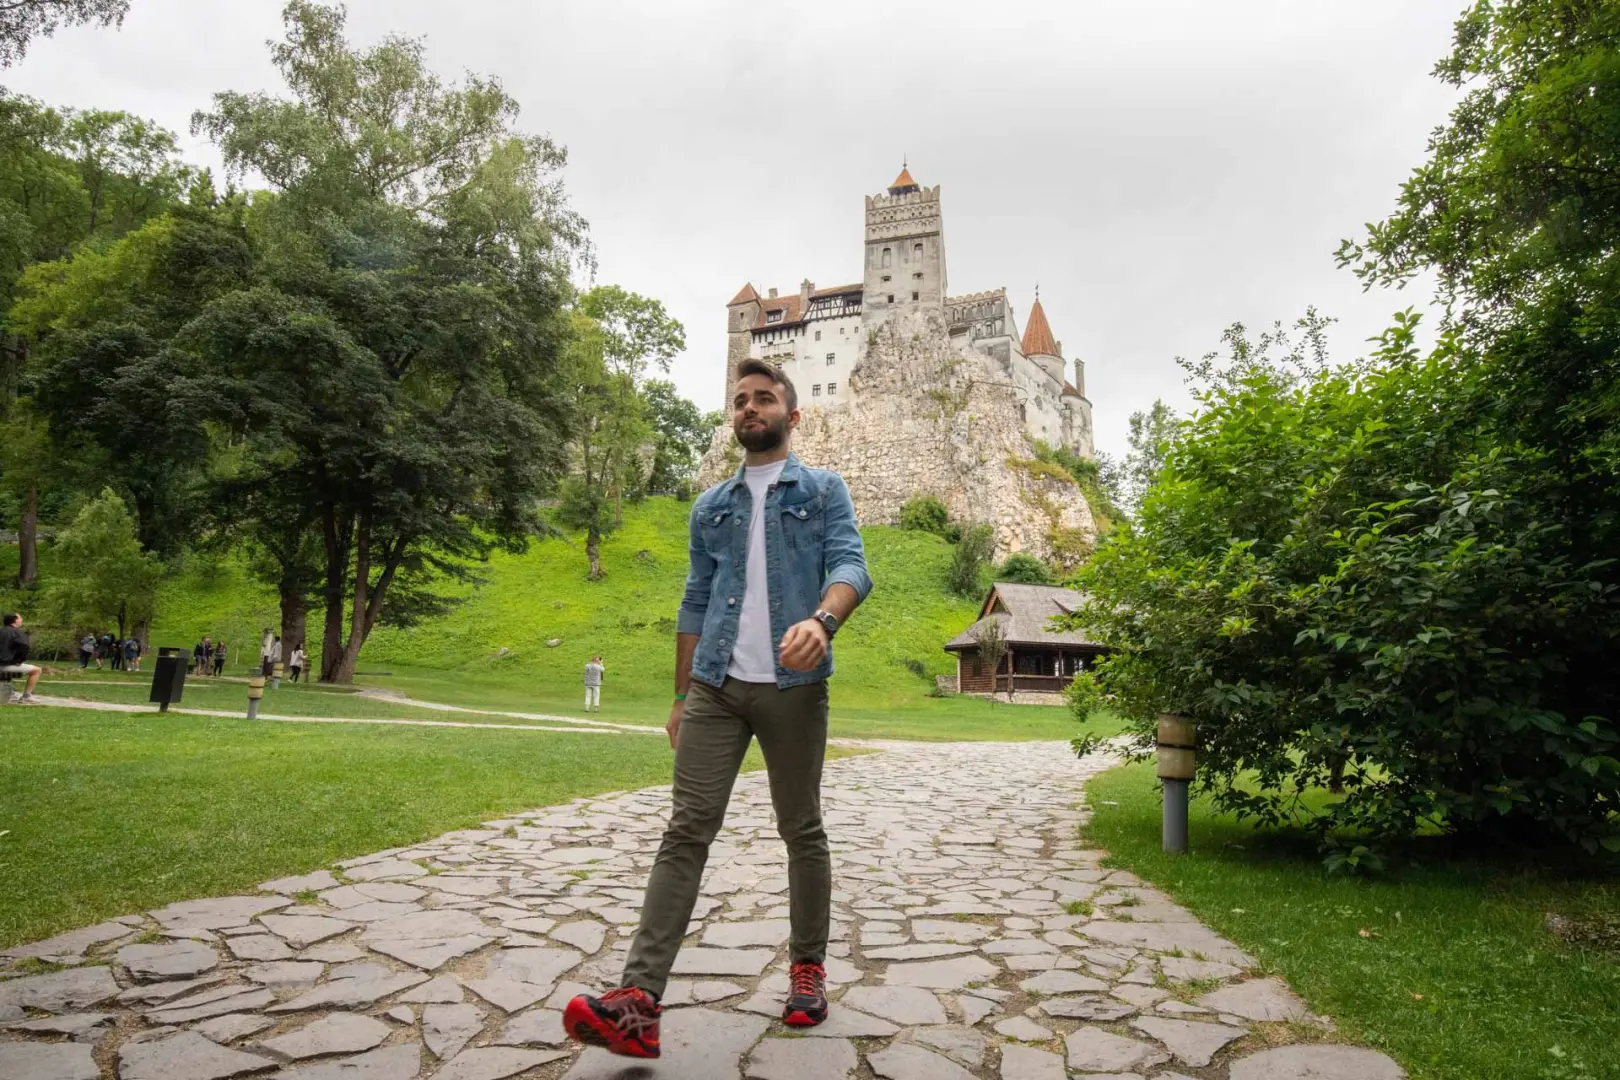 Descubre los misterios de Rumanía en grupo. Destino lleno de leyendas y castillos. Recorre Bucarest, Sibiu, Rasnov y Brasov en Transilvania y sus castillos